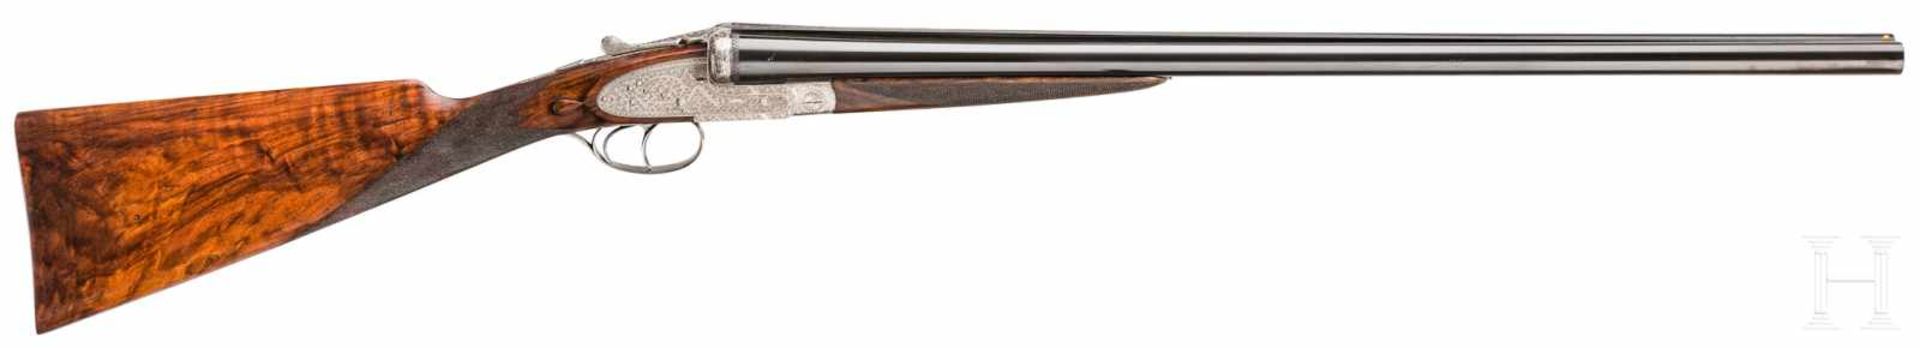 A side-by-side shotgun by Armes Jacquemart, Herstal